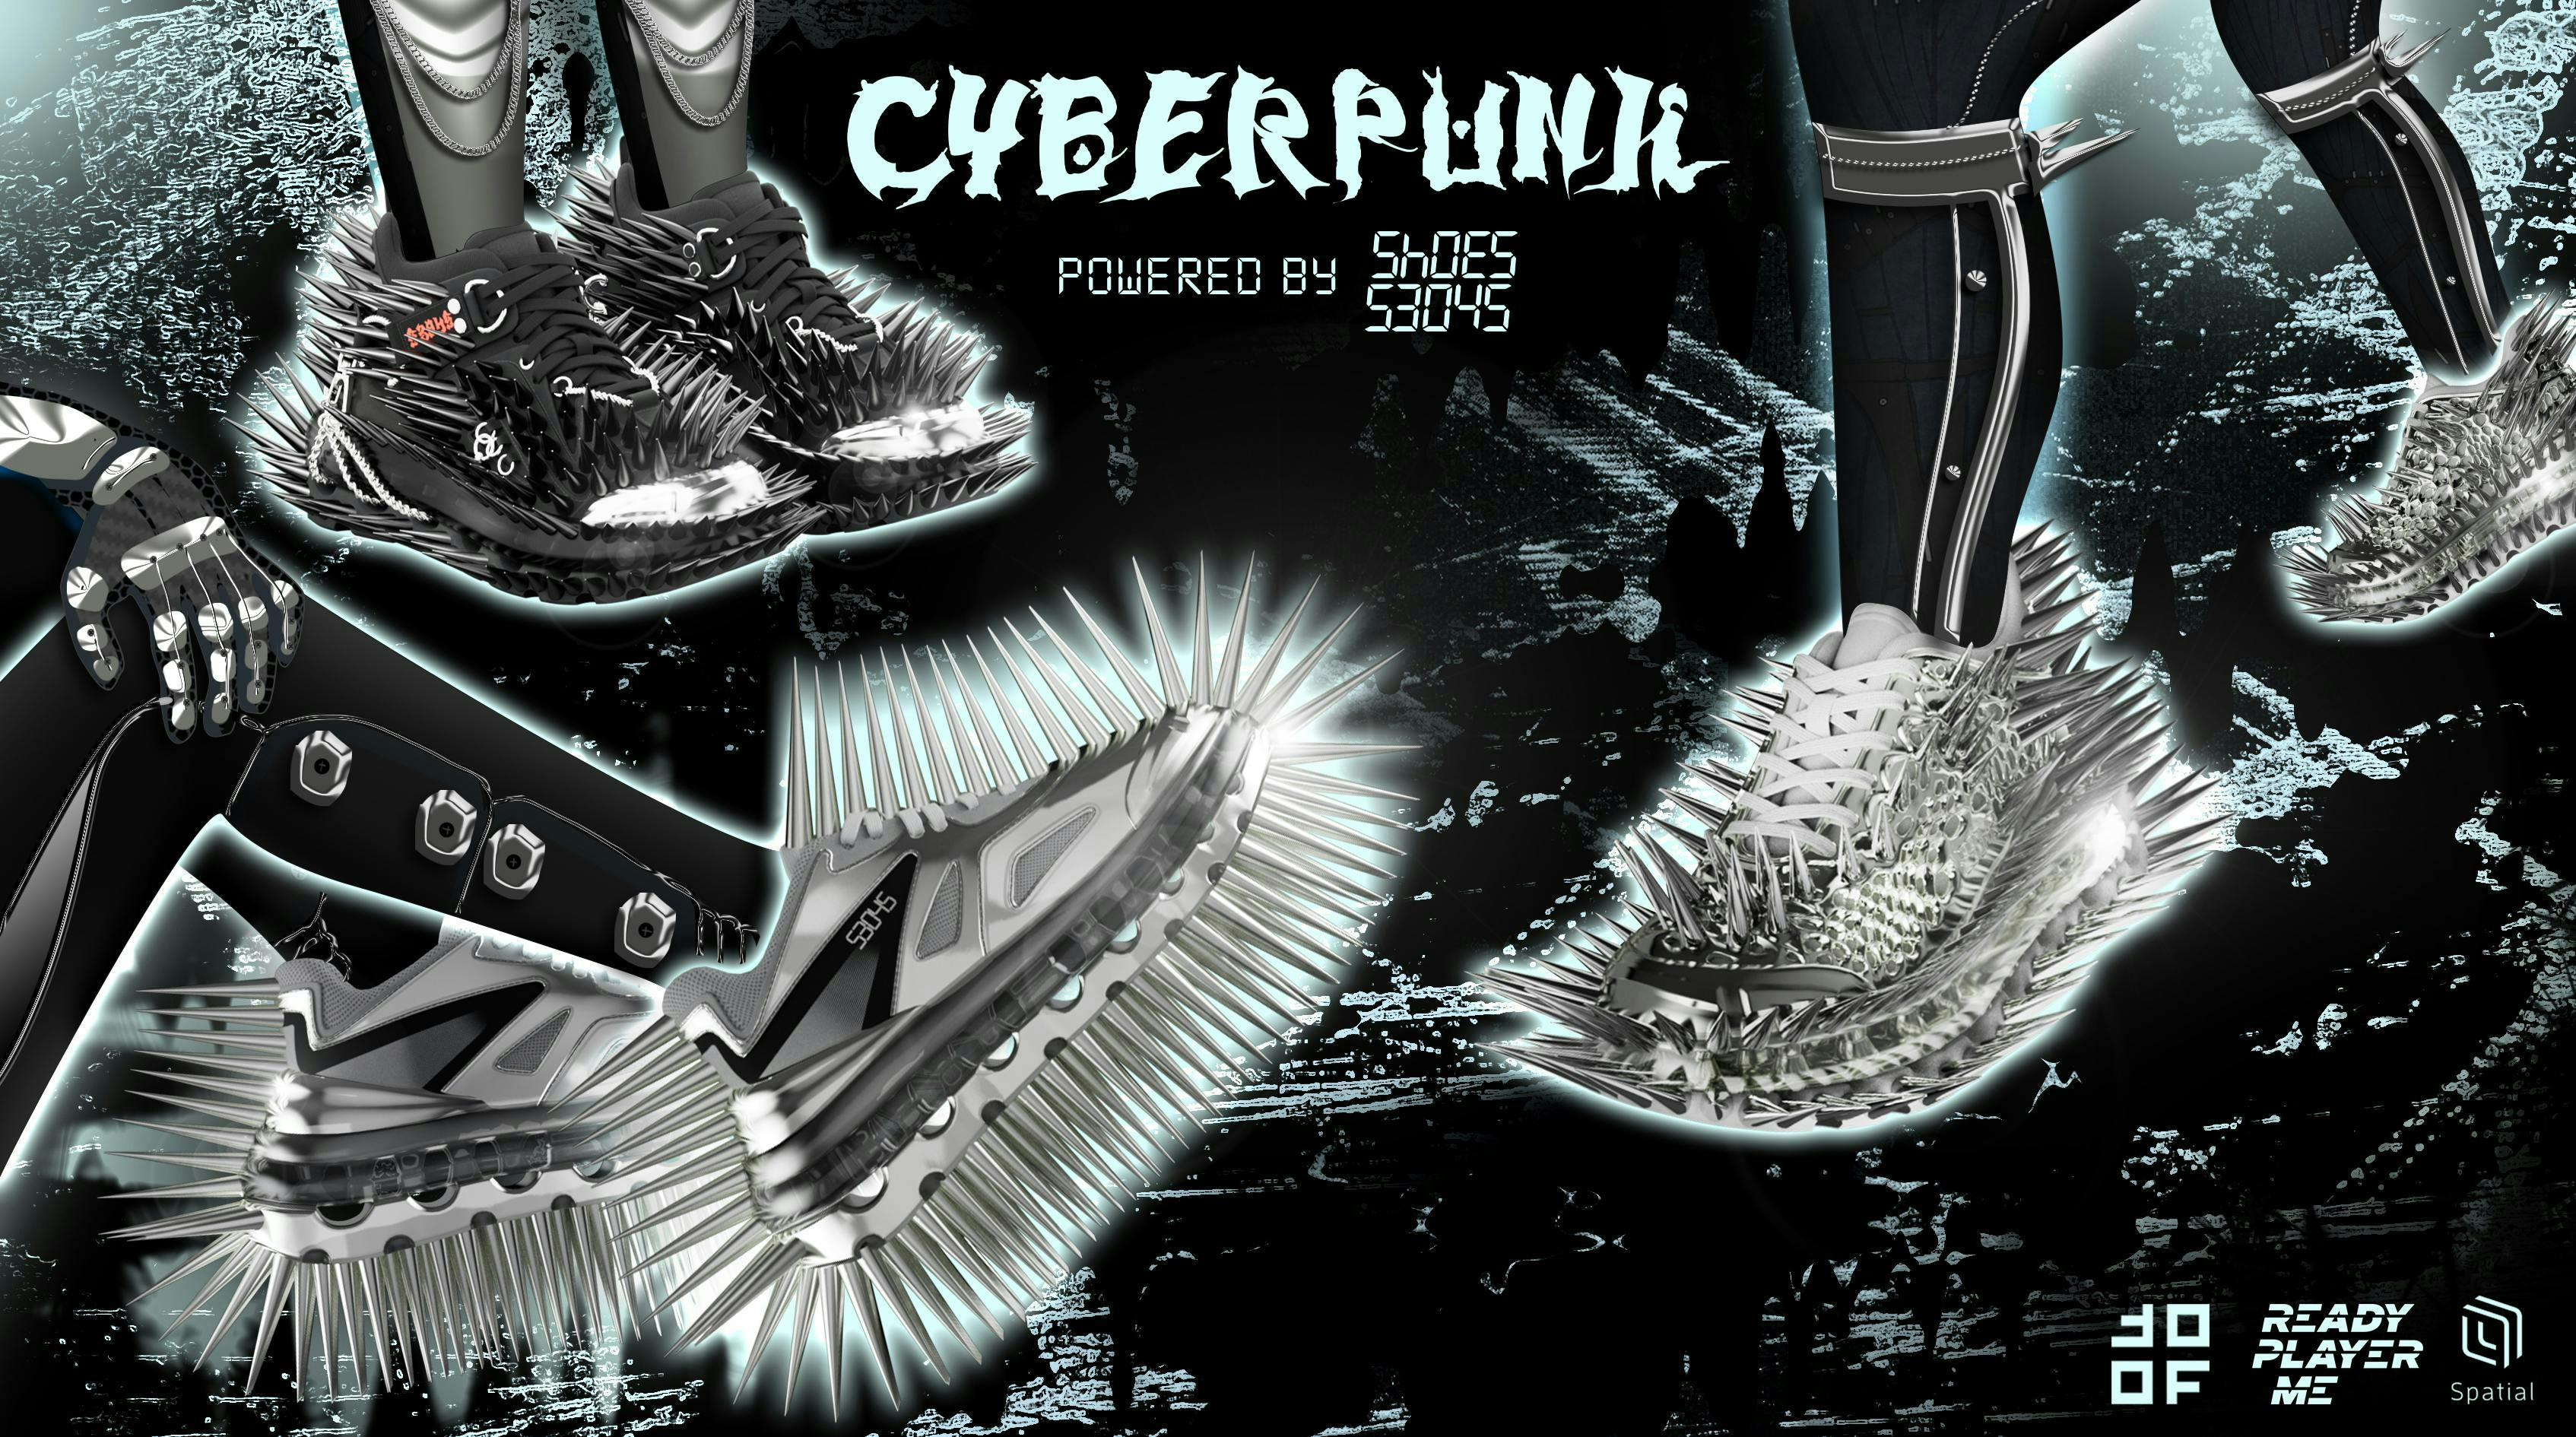 Il drop Cyberpunk delle sneakers 53045